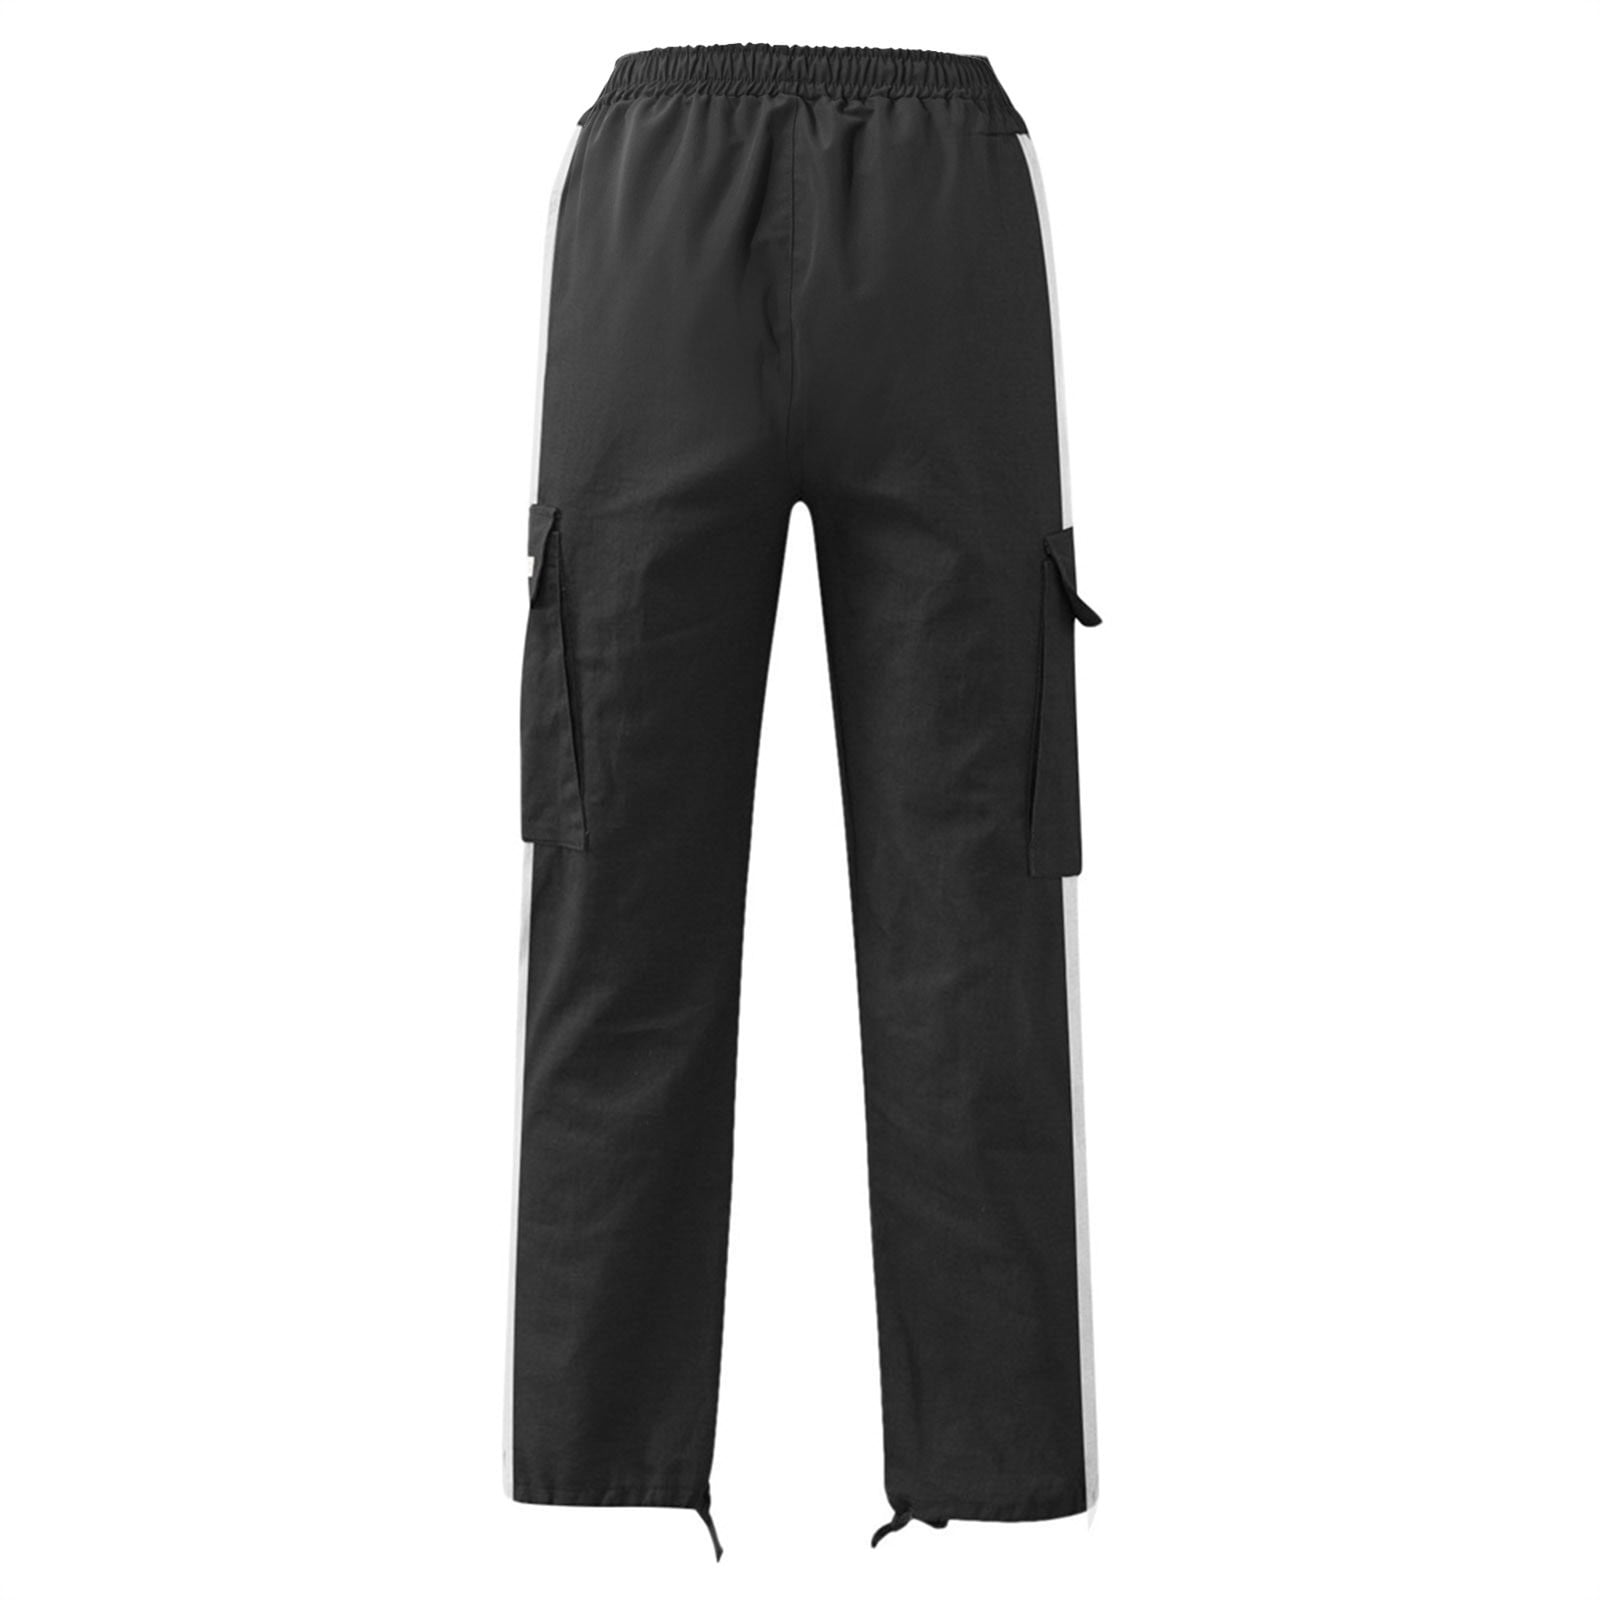 ZXHACSJ Men's Pants Regular Fit Cargo Pants Jogging Cargo Pants 